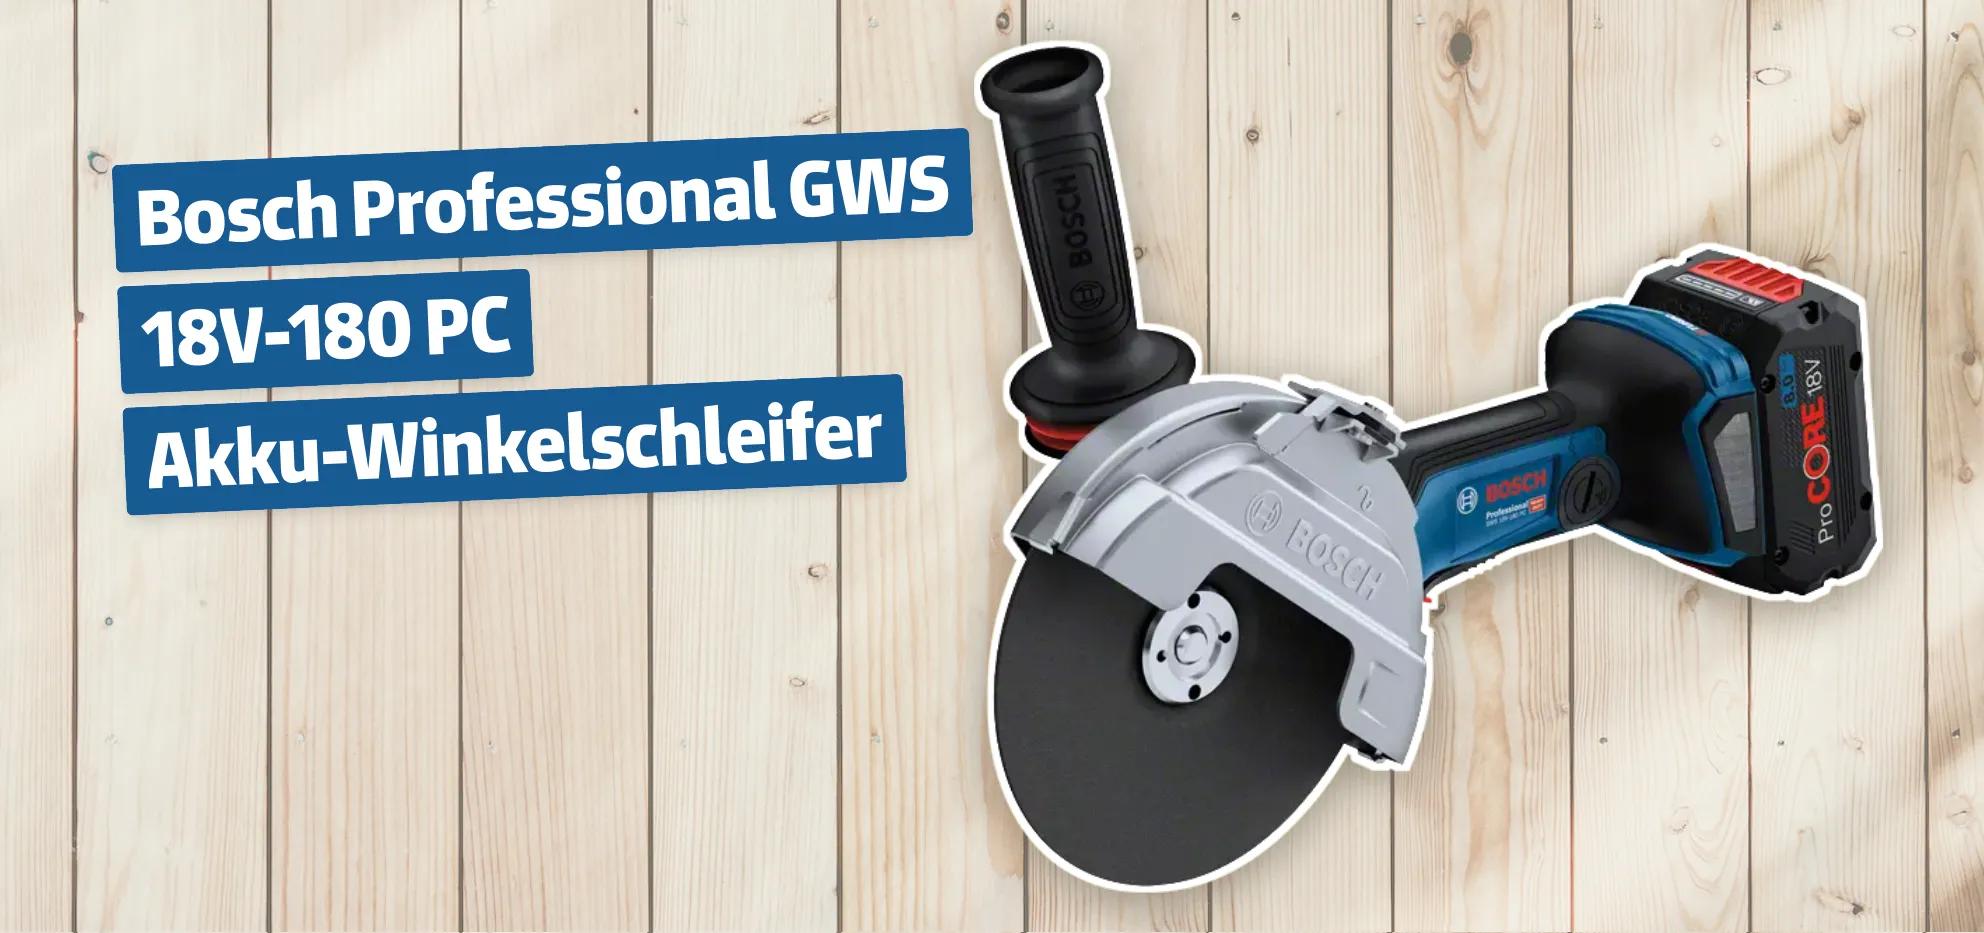 Bosch Professional GWS 18V-180 PC Akku-Winkelschleifer